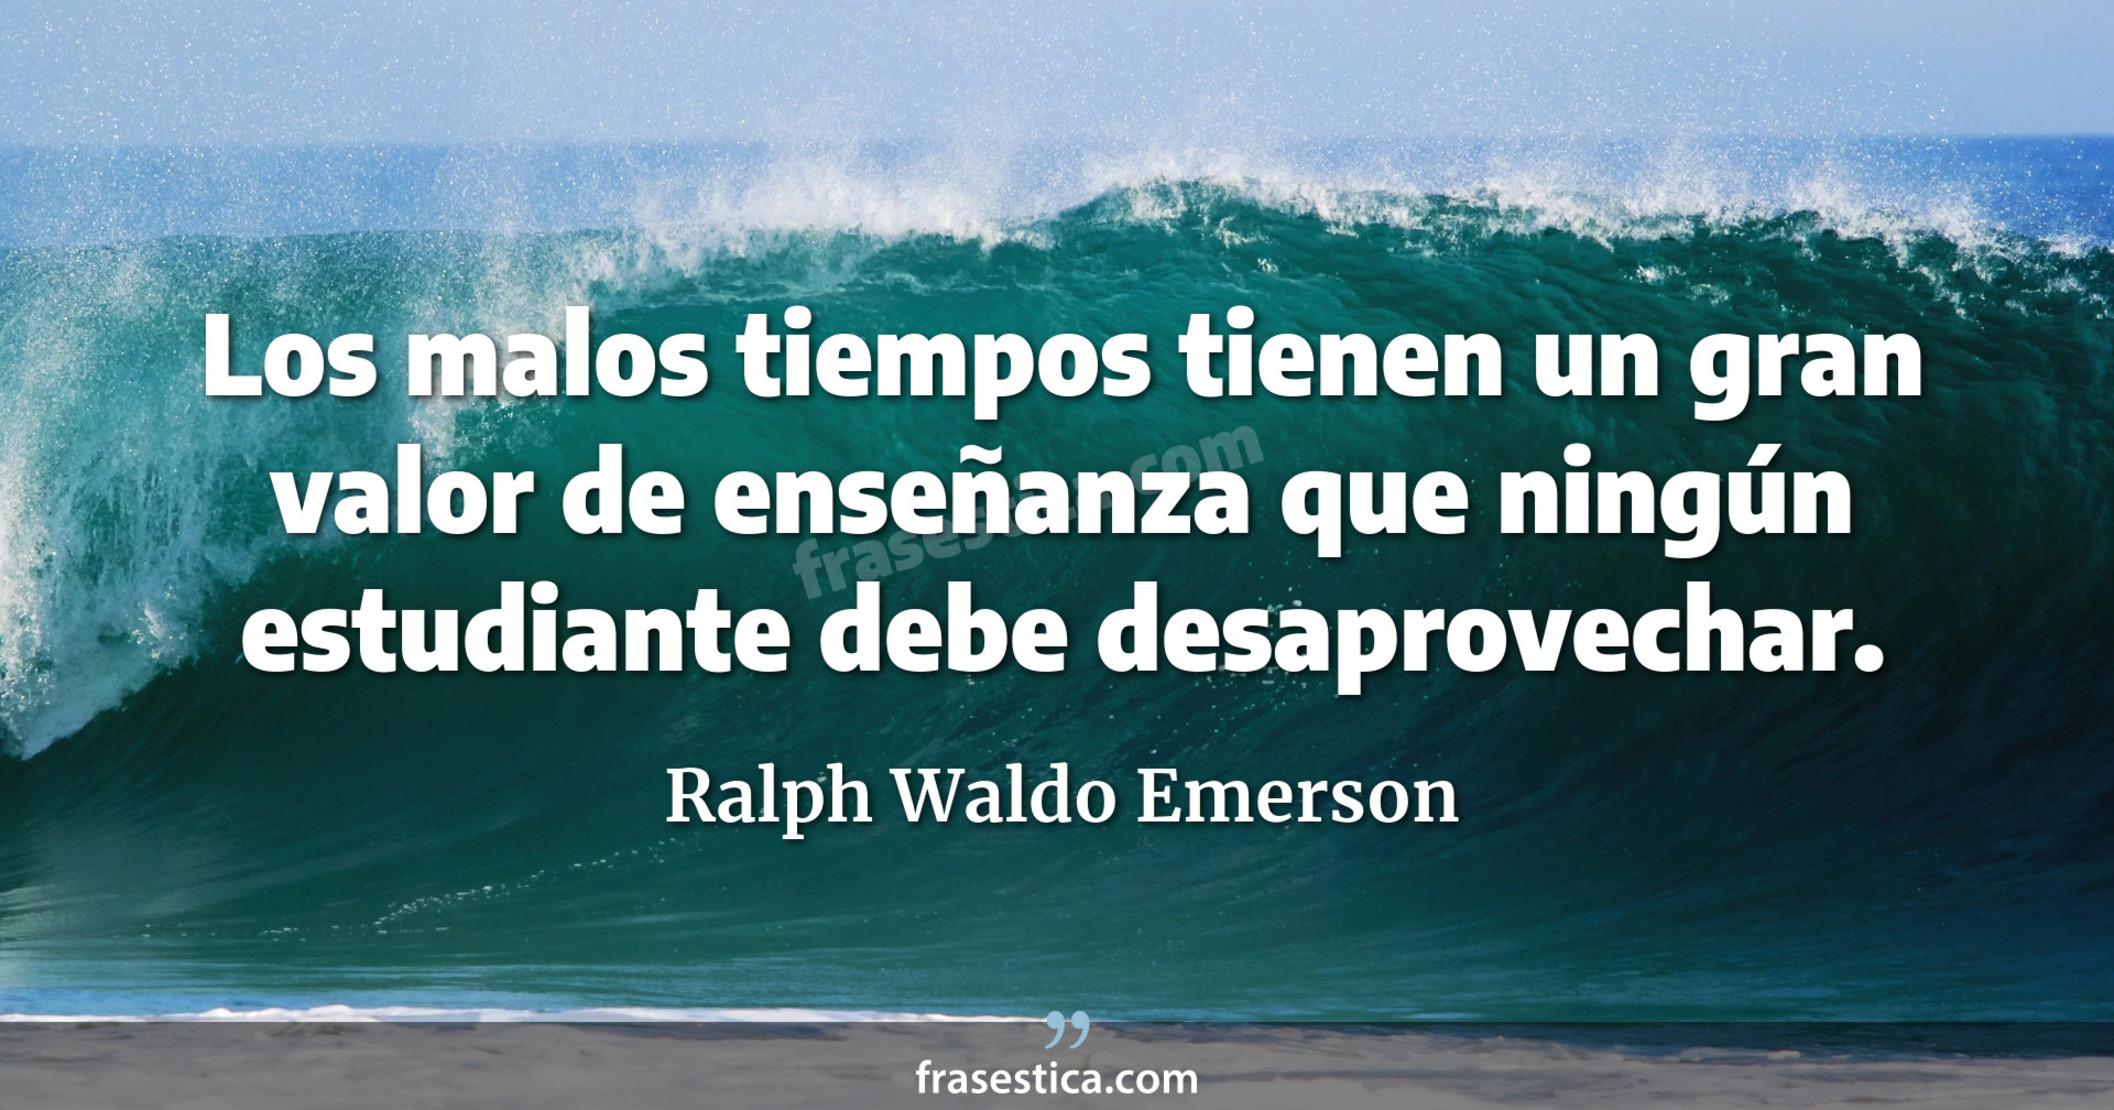 Los malos tiempos tienen un gran valor de enseñanza que ningún estudiante debe desaprovechar. - Ralph Waldo Emerson